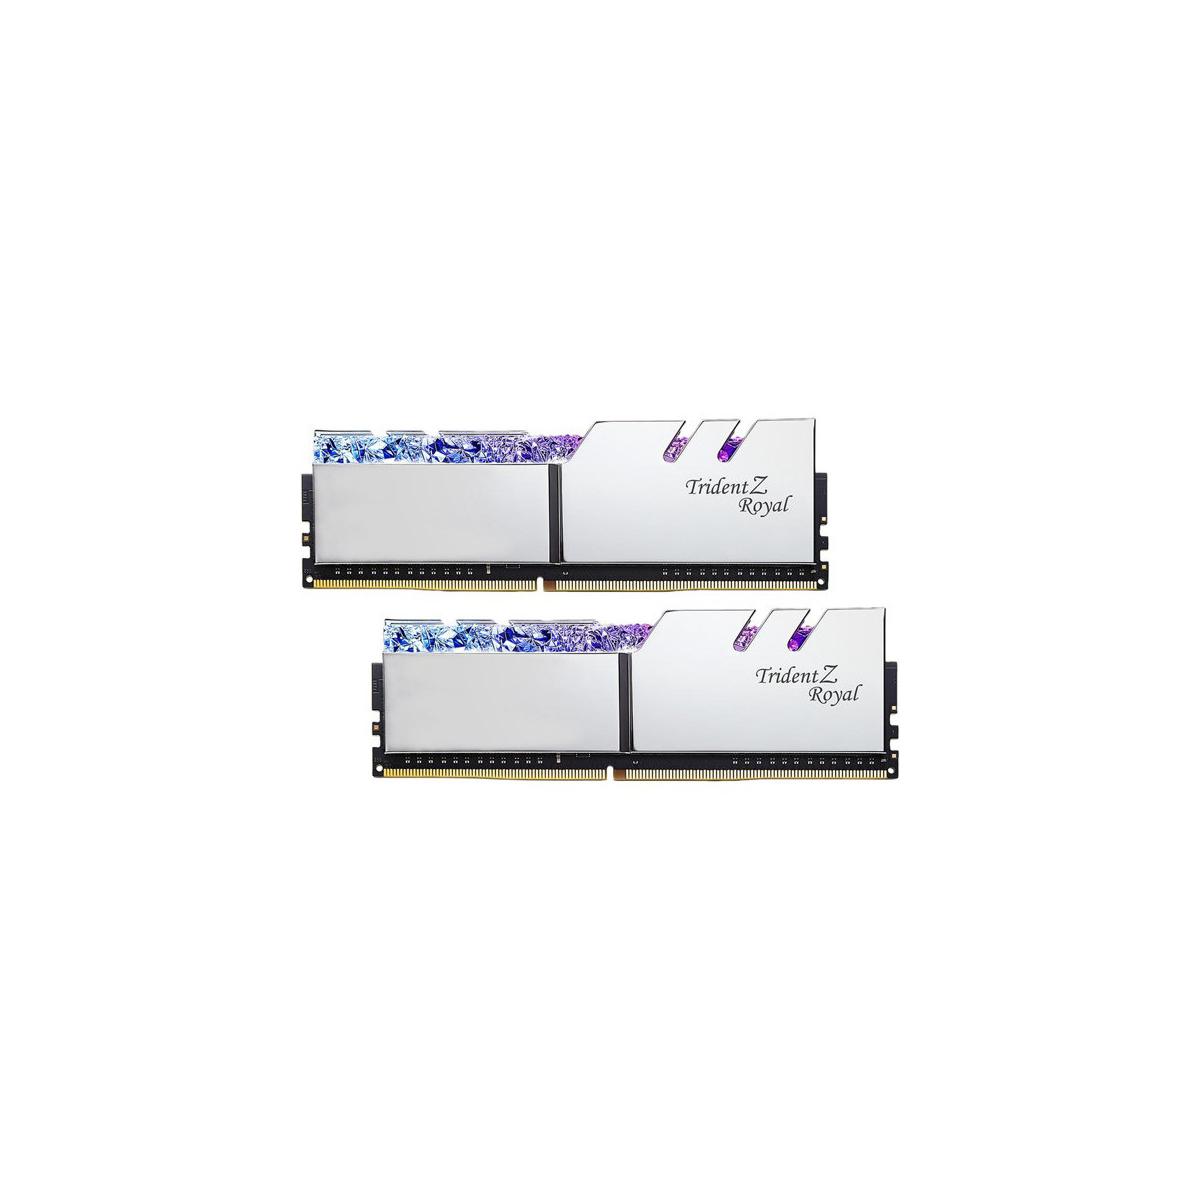 MEMORIA DIMM DDR4 G.SKILL (F4-3200C16D-32GTRS) 32GB (2X16GB) 3200 MHZ, TRIDENT ROYAL SILVER - F4-3200C16D-32GTRS